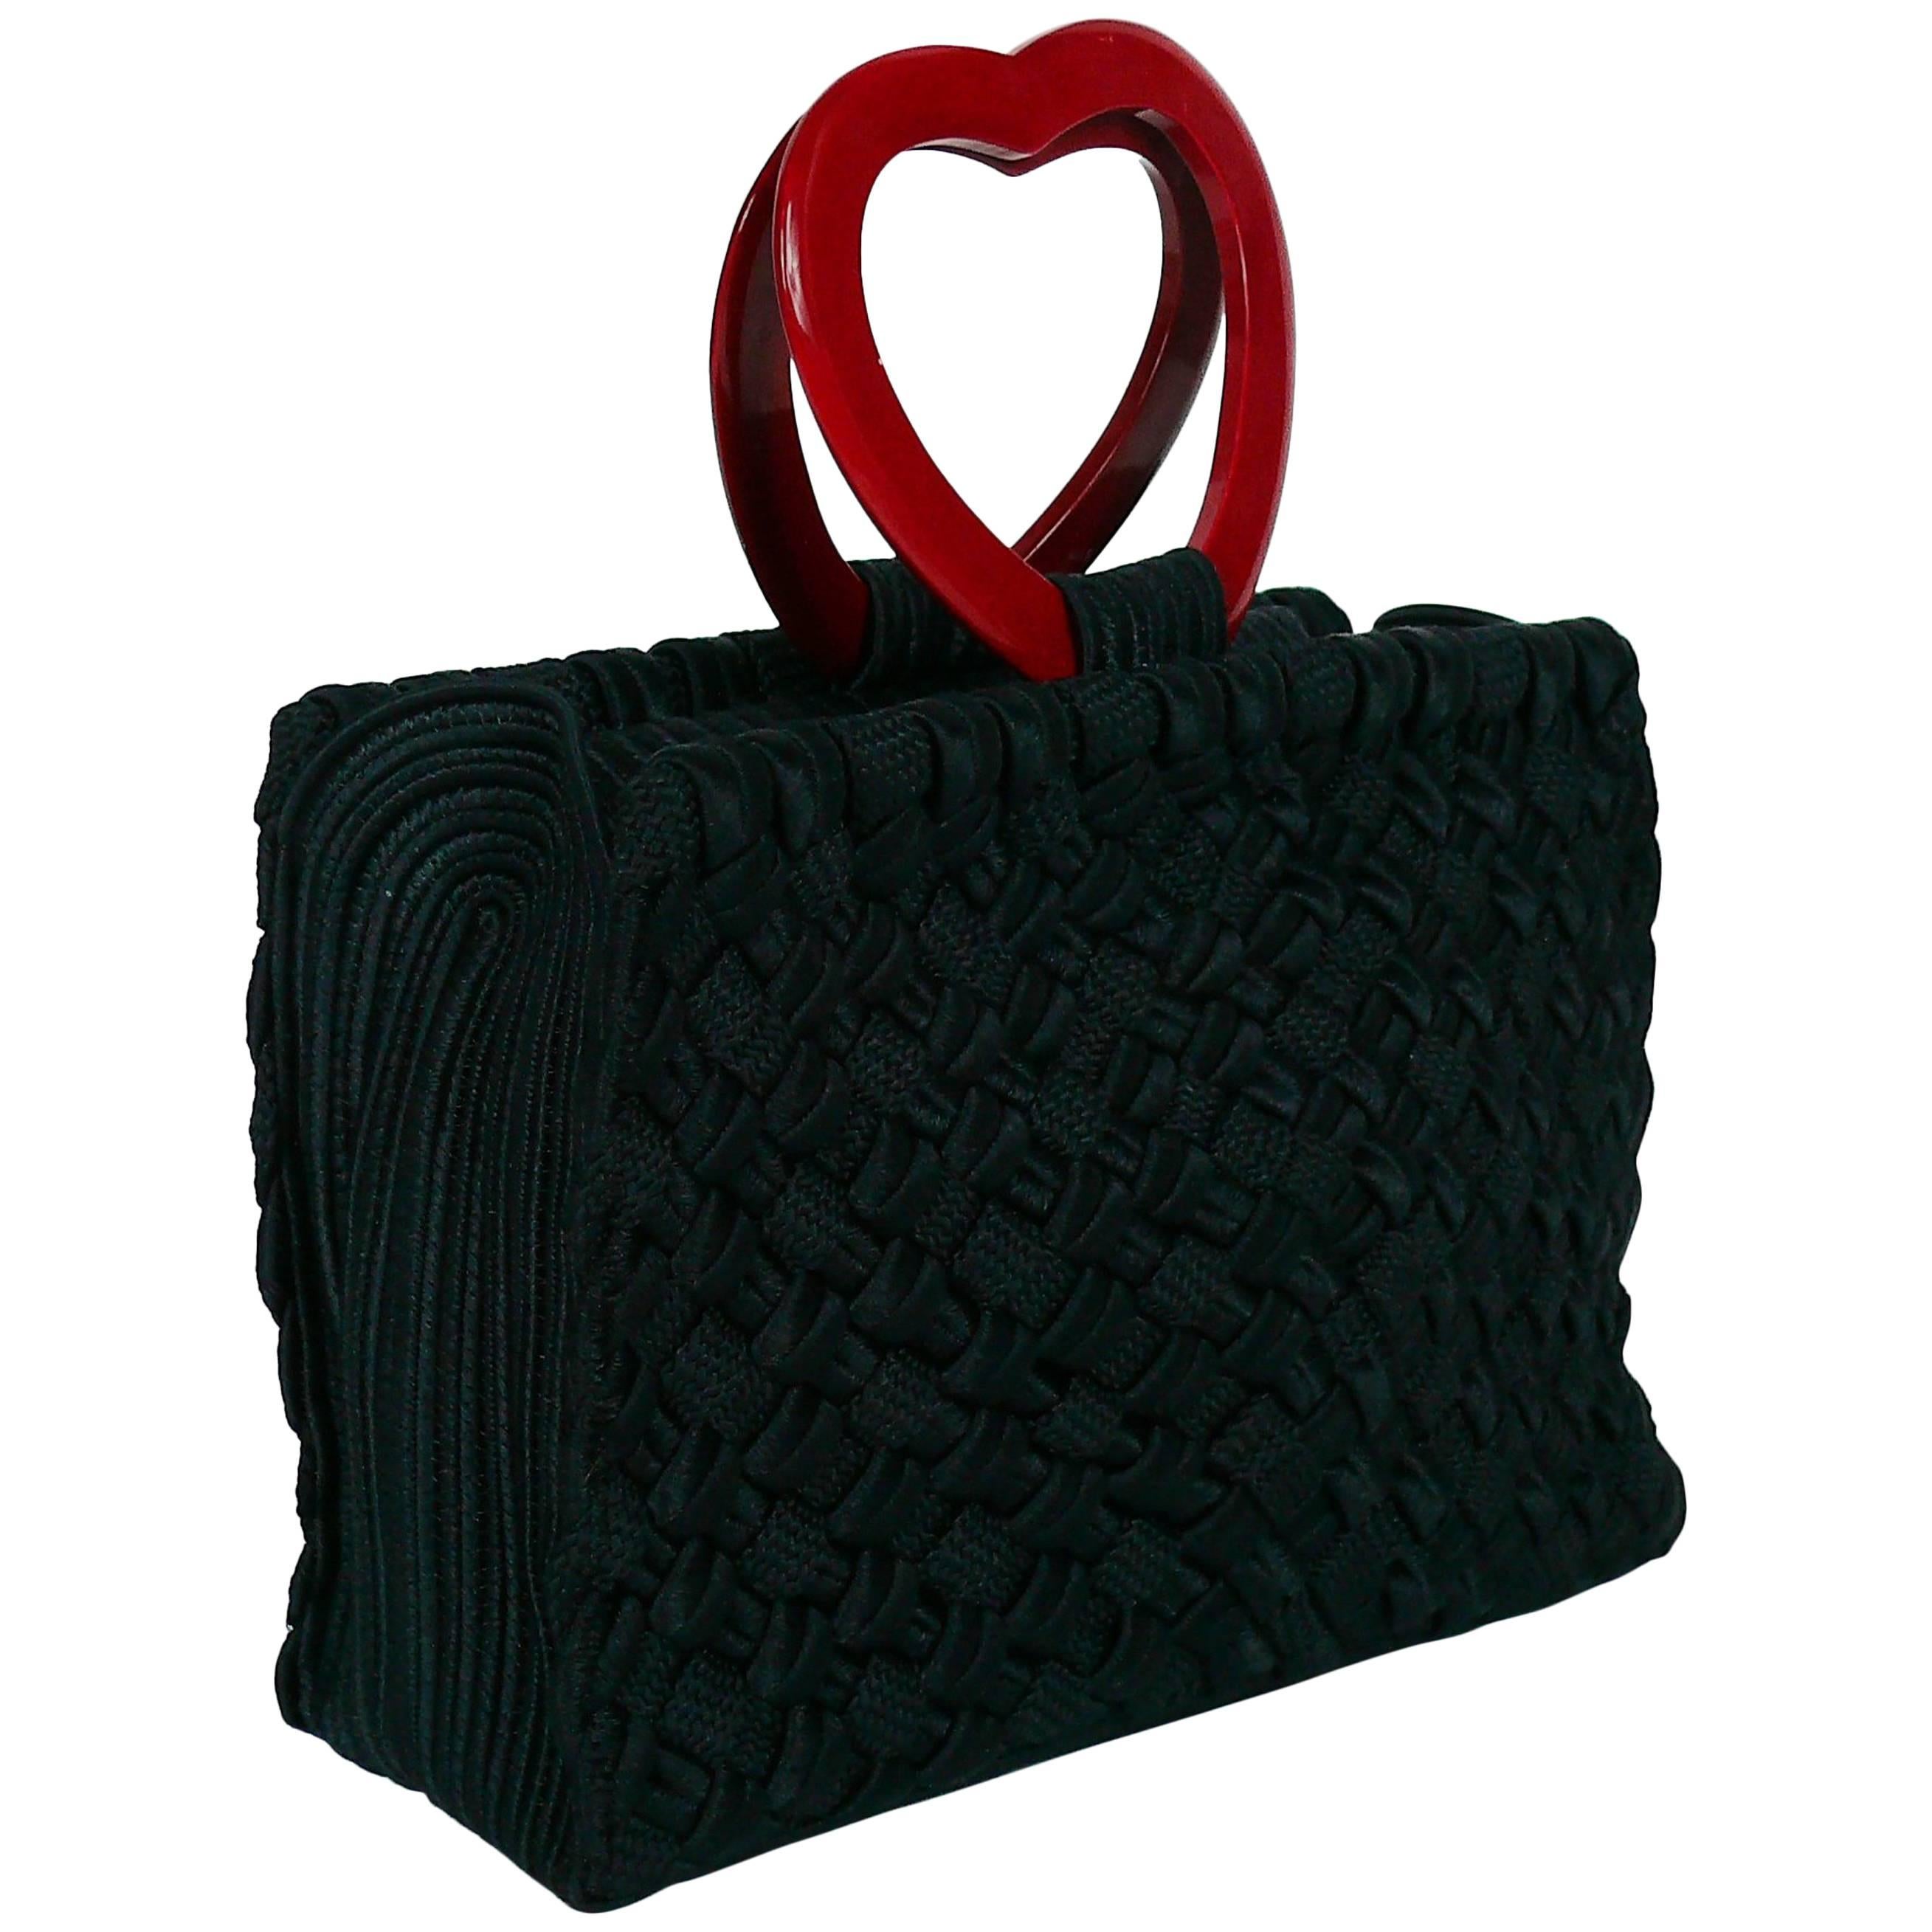 Yves Saint Laurent YSL Vintage "In Love Again" Heart Handle Bag